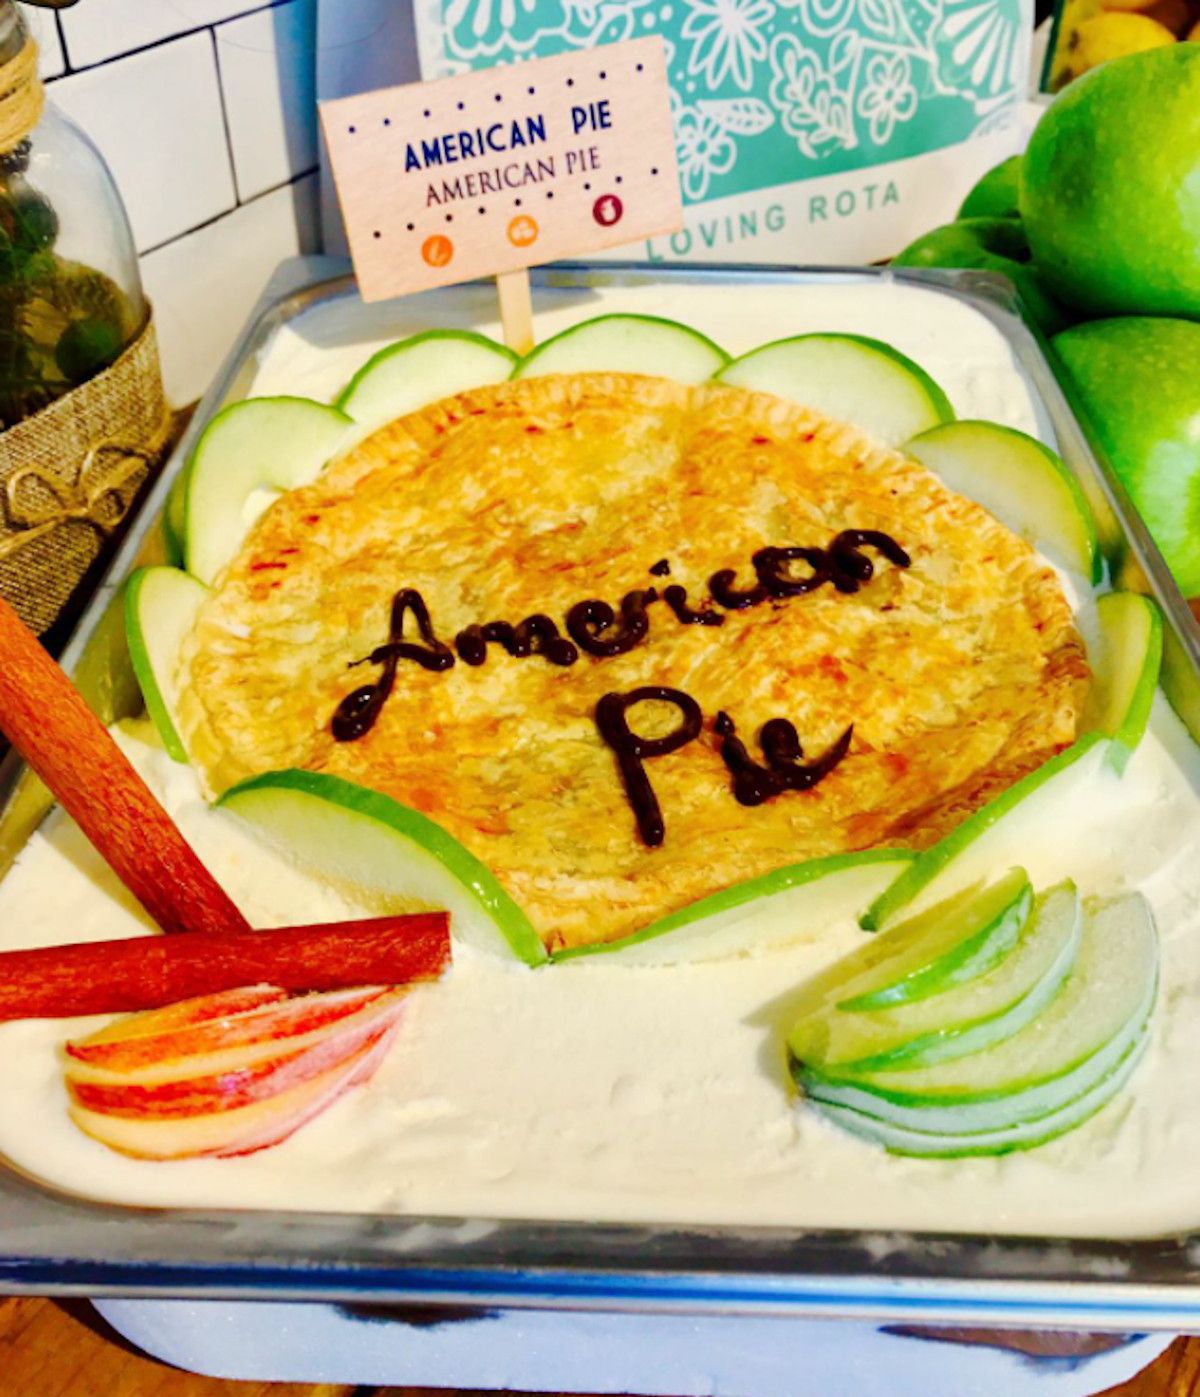 American Pie en la heladería Margarita La Fresca (Rota).